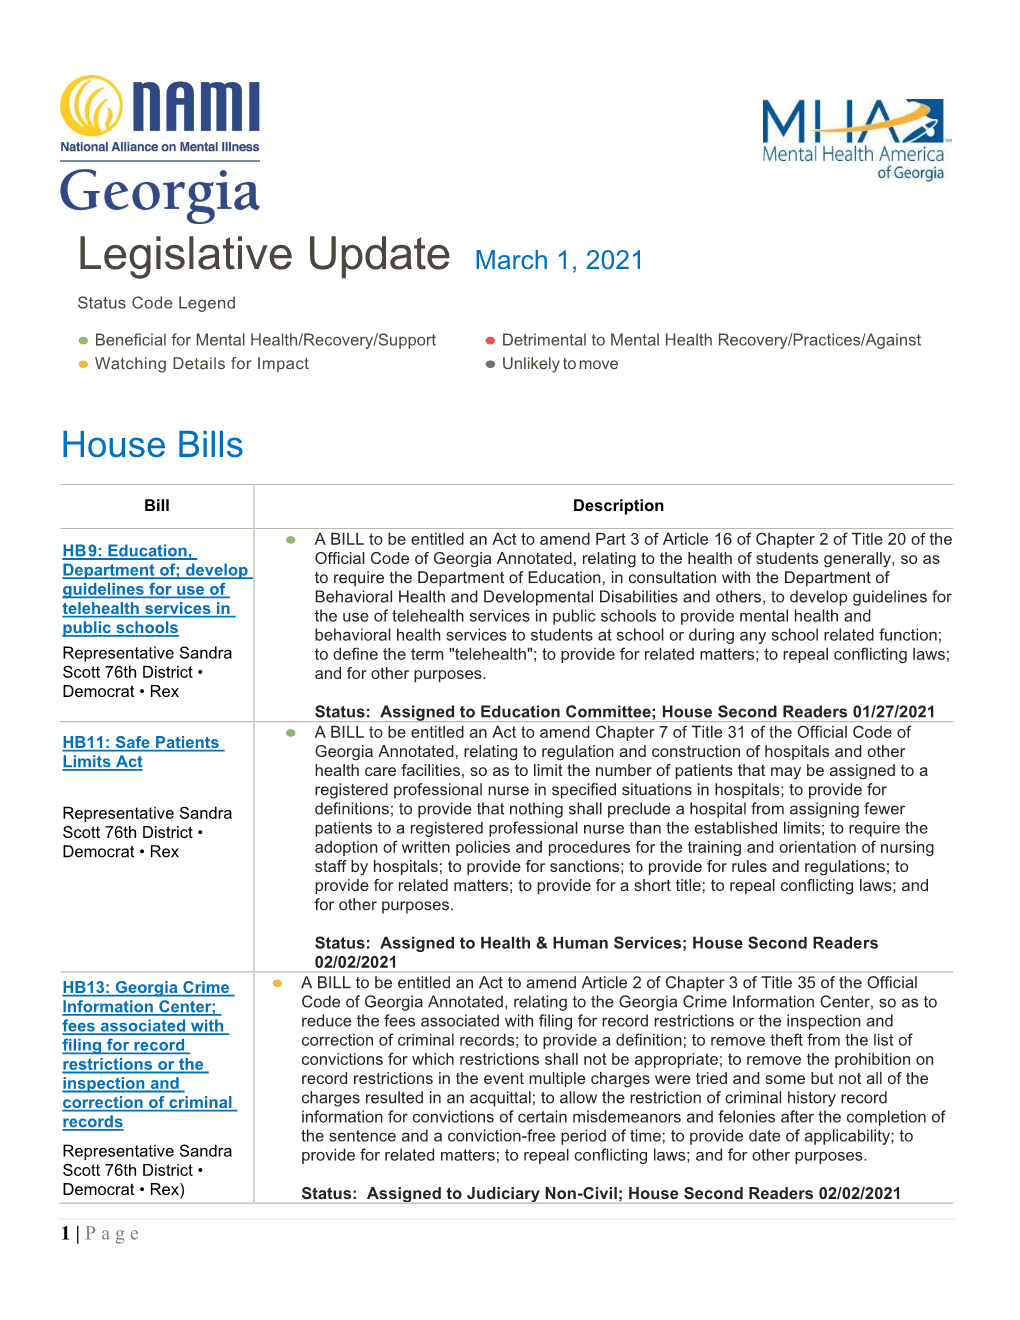 Legislative Update March 1, 2021